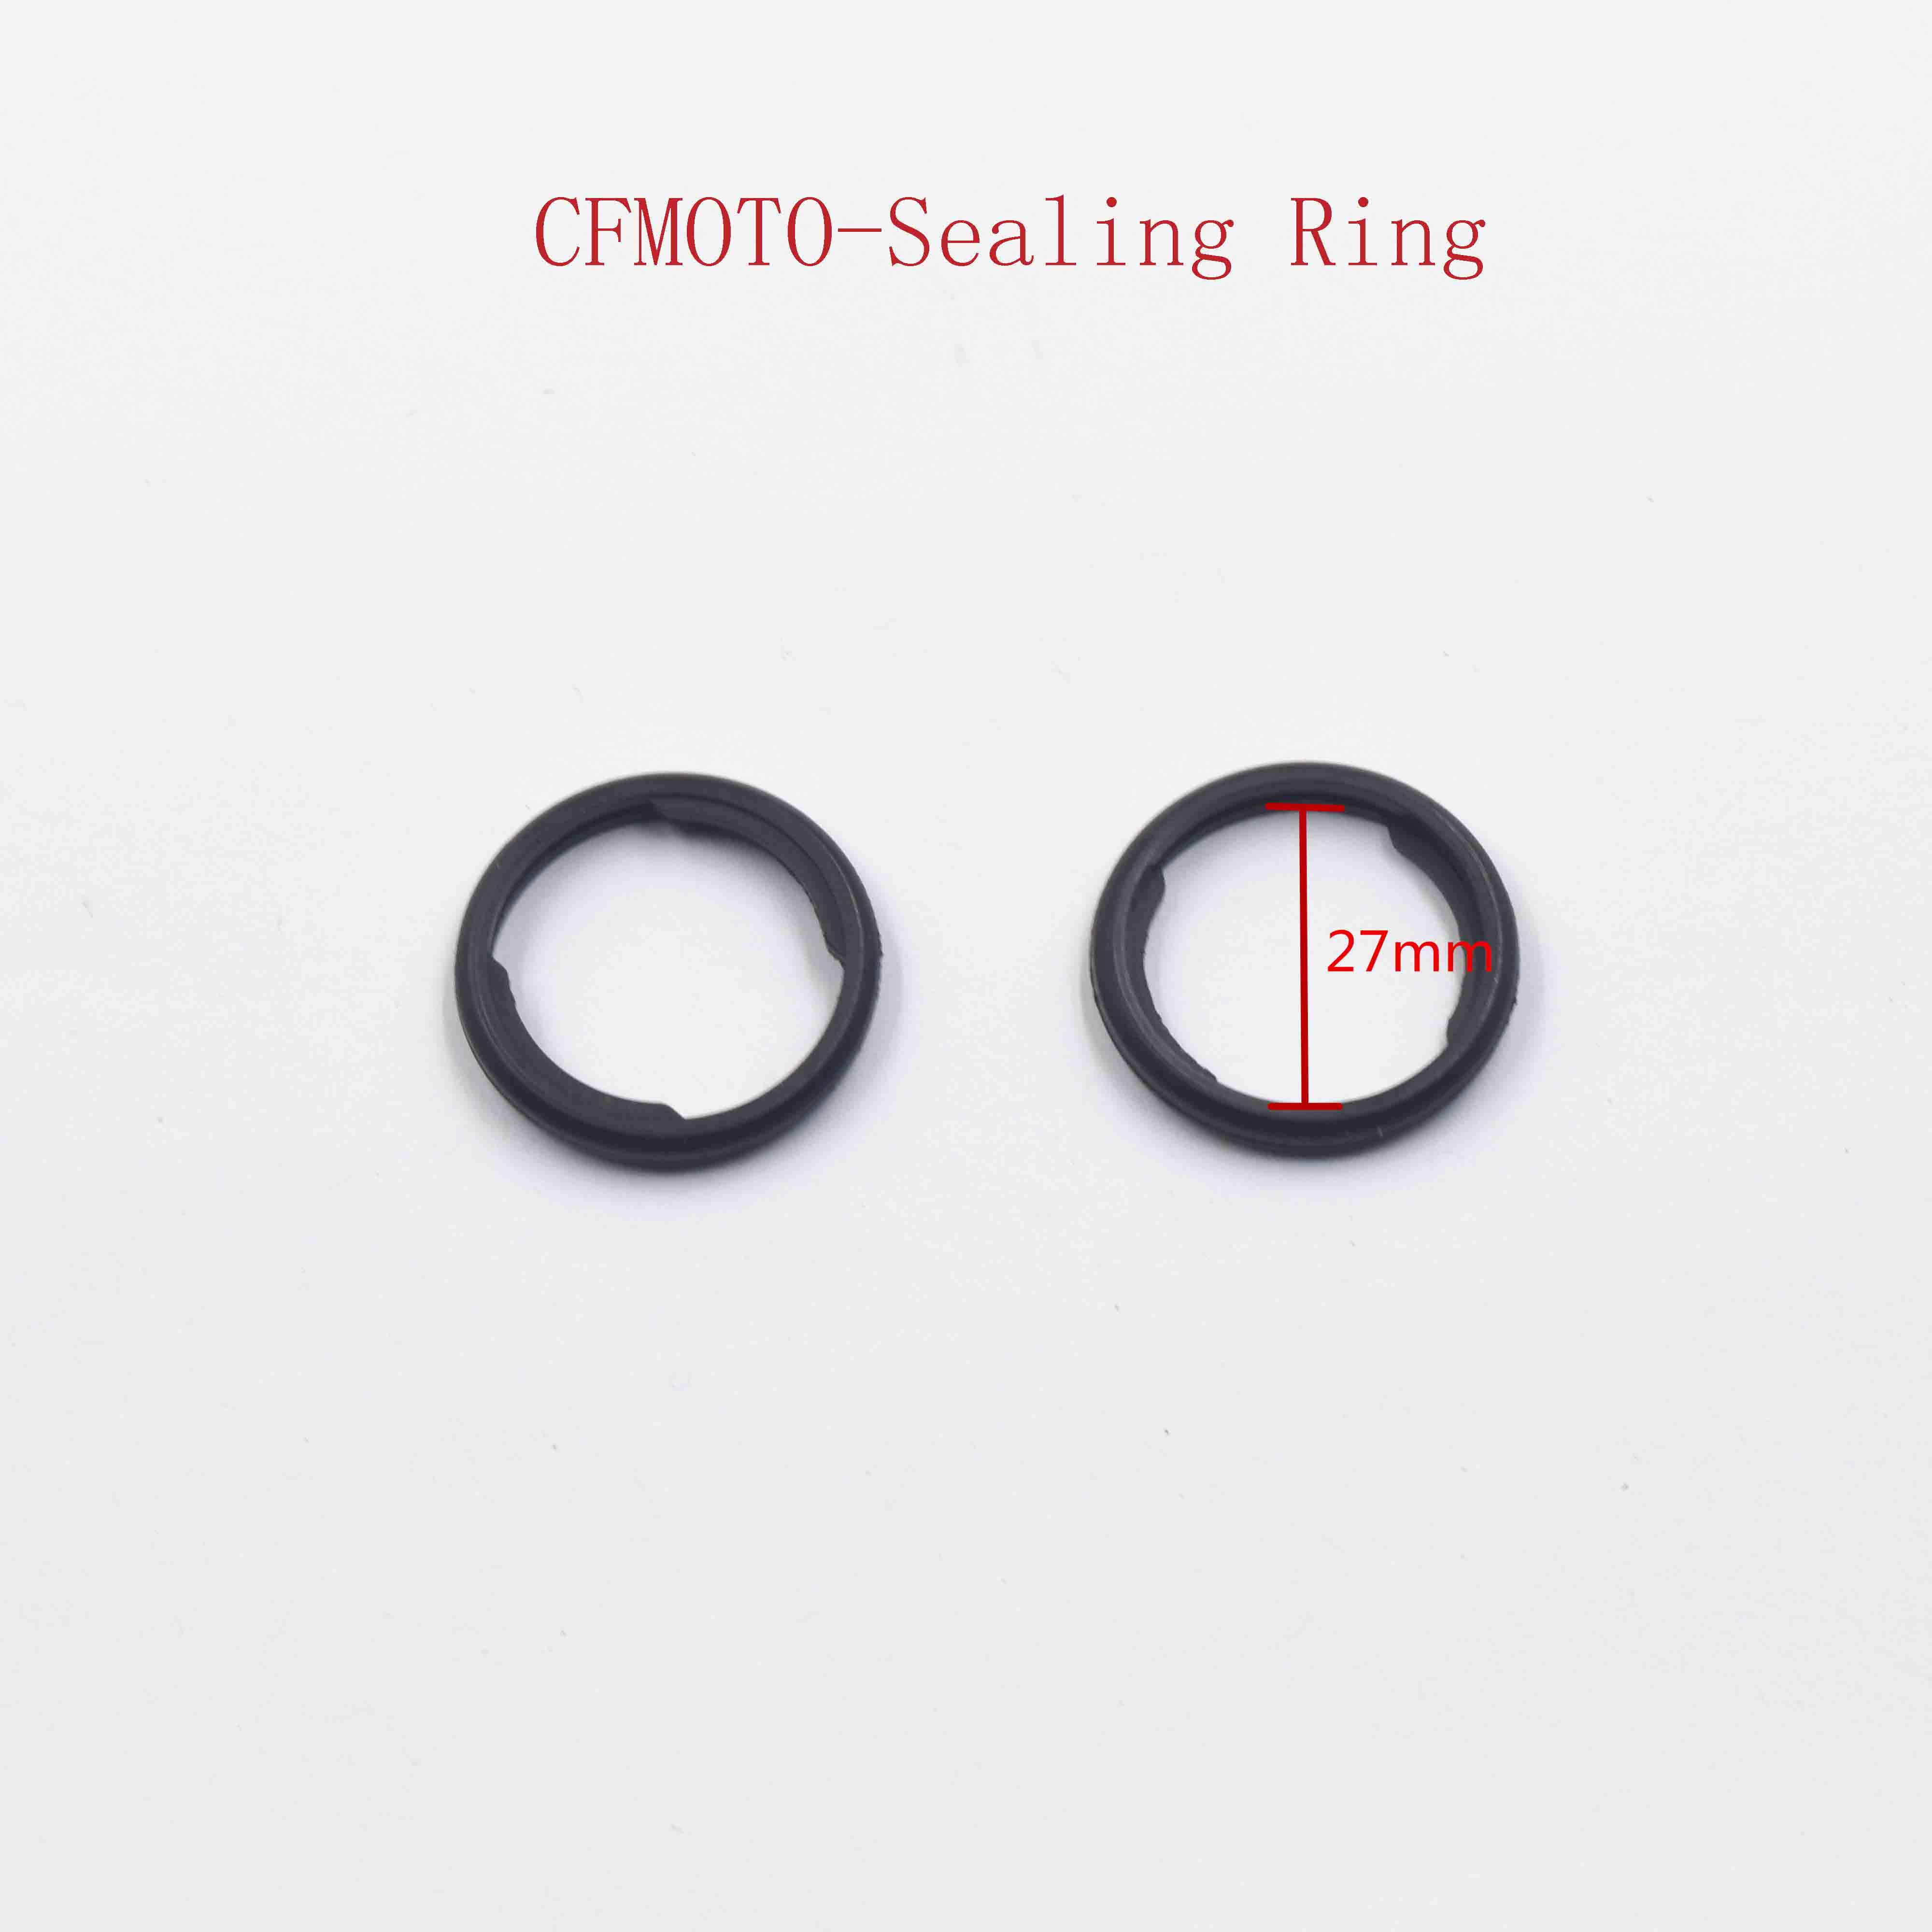 CFMOTO-Sealing Ring 